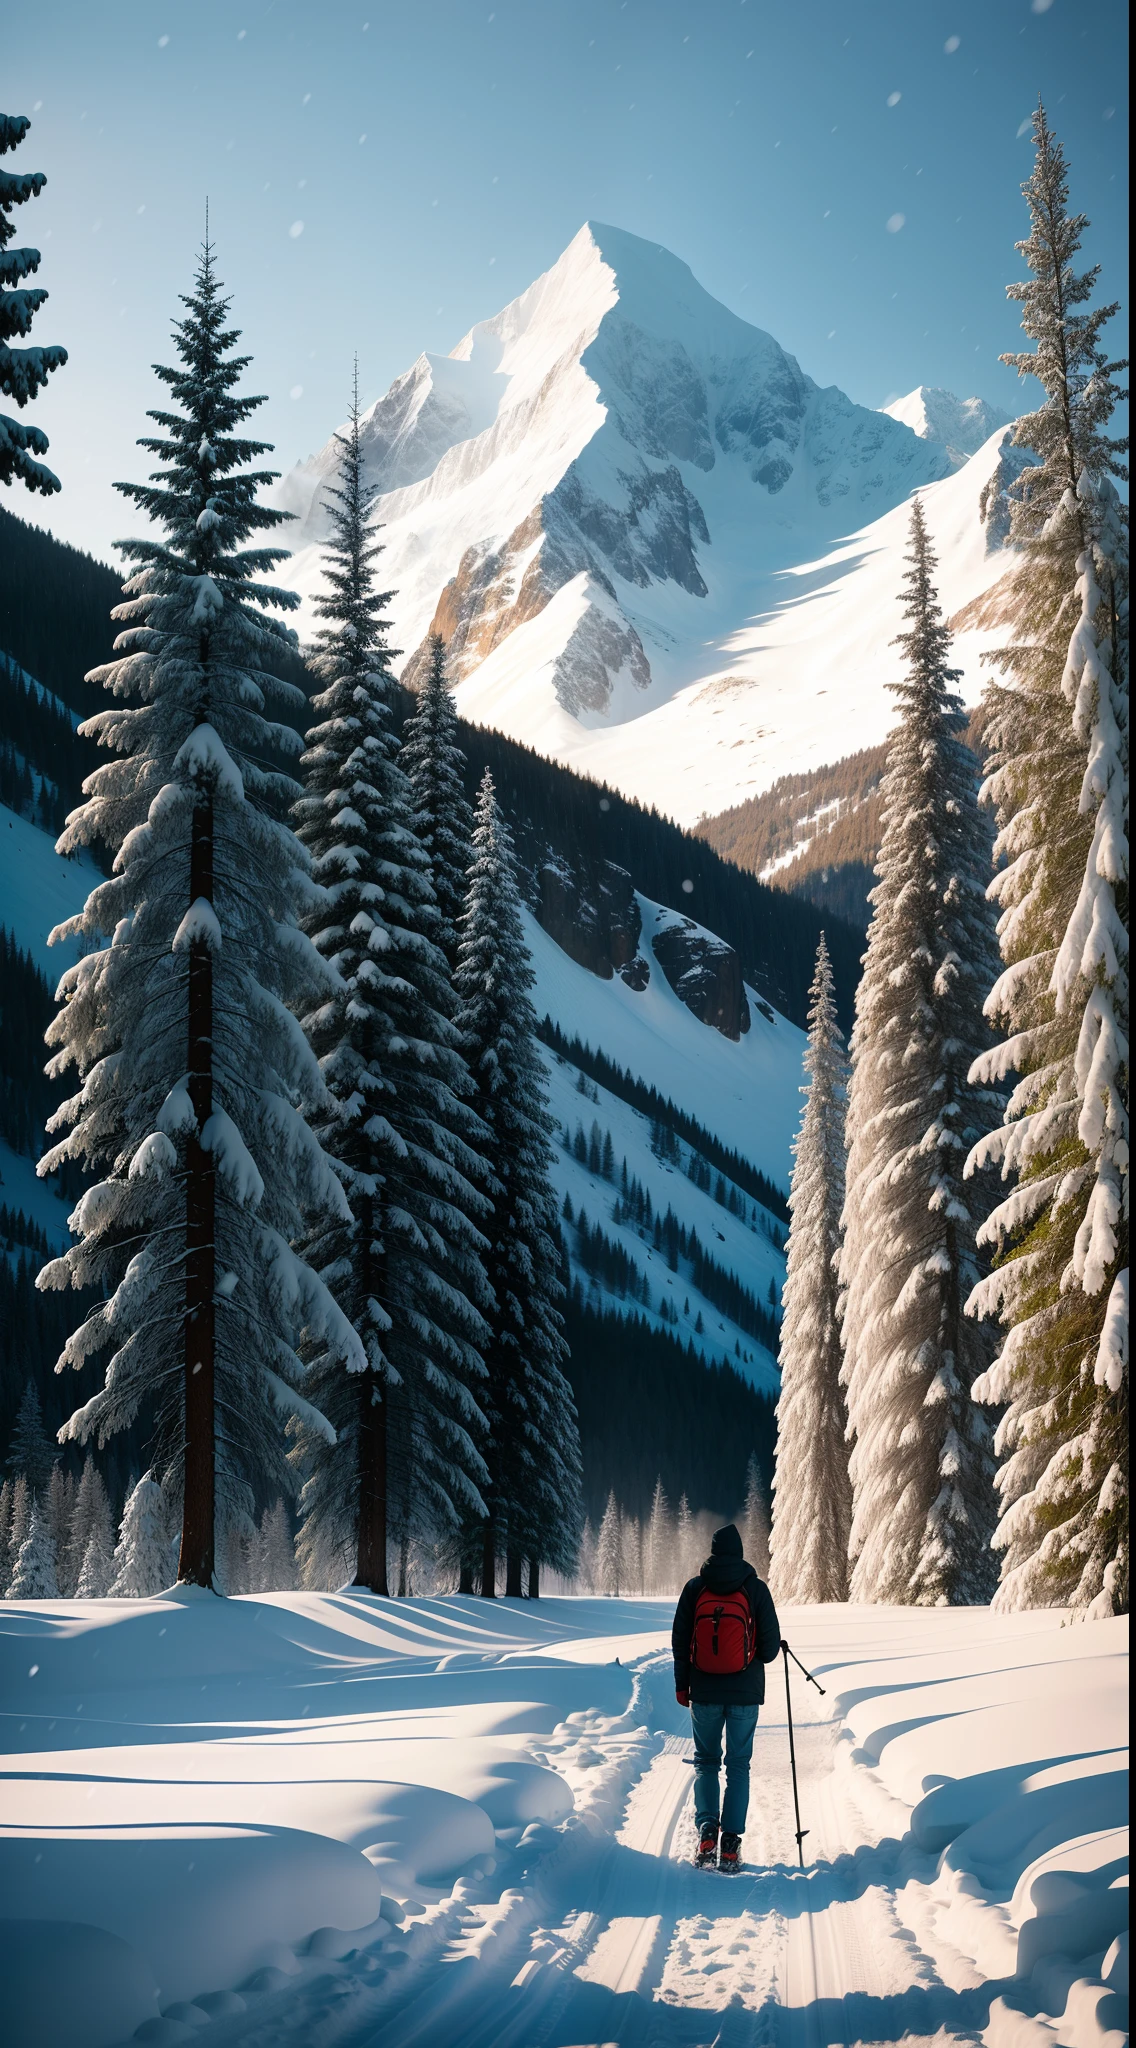 原始照片，冬天的風景，山脈，樹，正在下雪，一個男人背著背包走路，工作人員在手，8K超高清，數位單眼，柔和的燈光，高品質，膠片顆粒，富士XT3